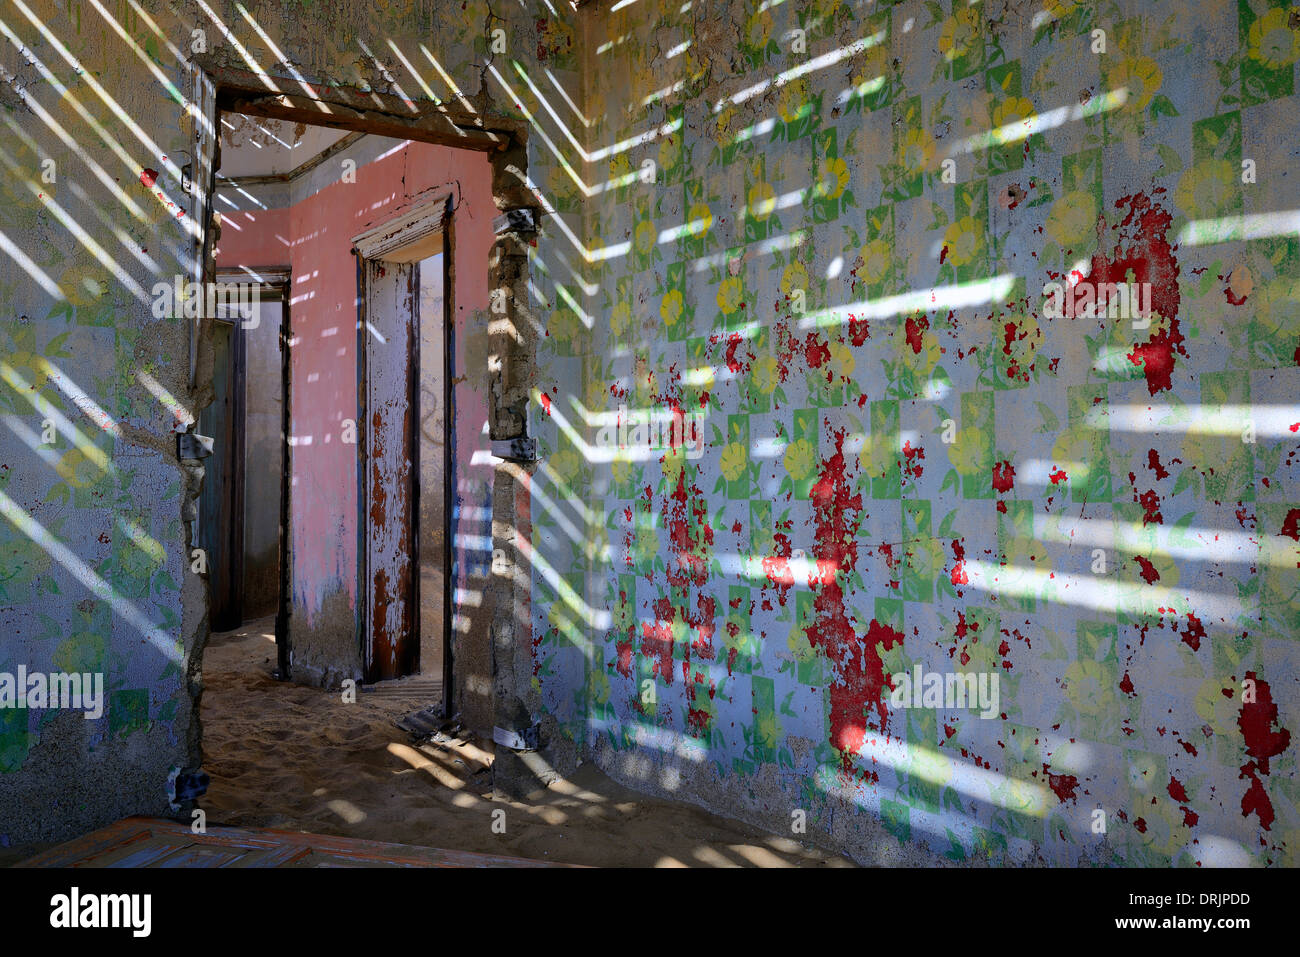 Licht spielt in Dünen und Wüstensand genommen Wohngebäude, Gebäude in der ehemaligen Diamant-Stadt Kolmansk arbeiten Stockfoto